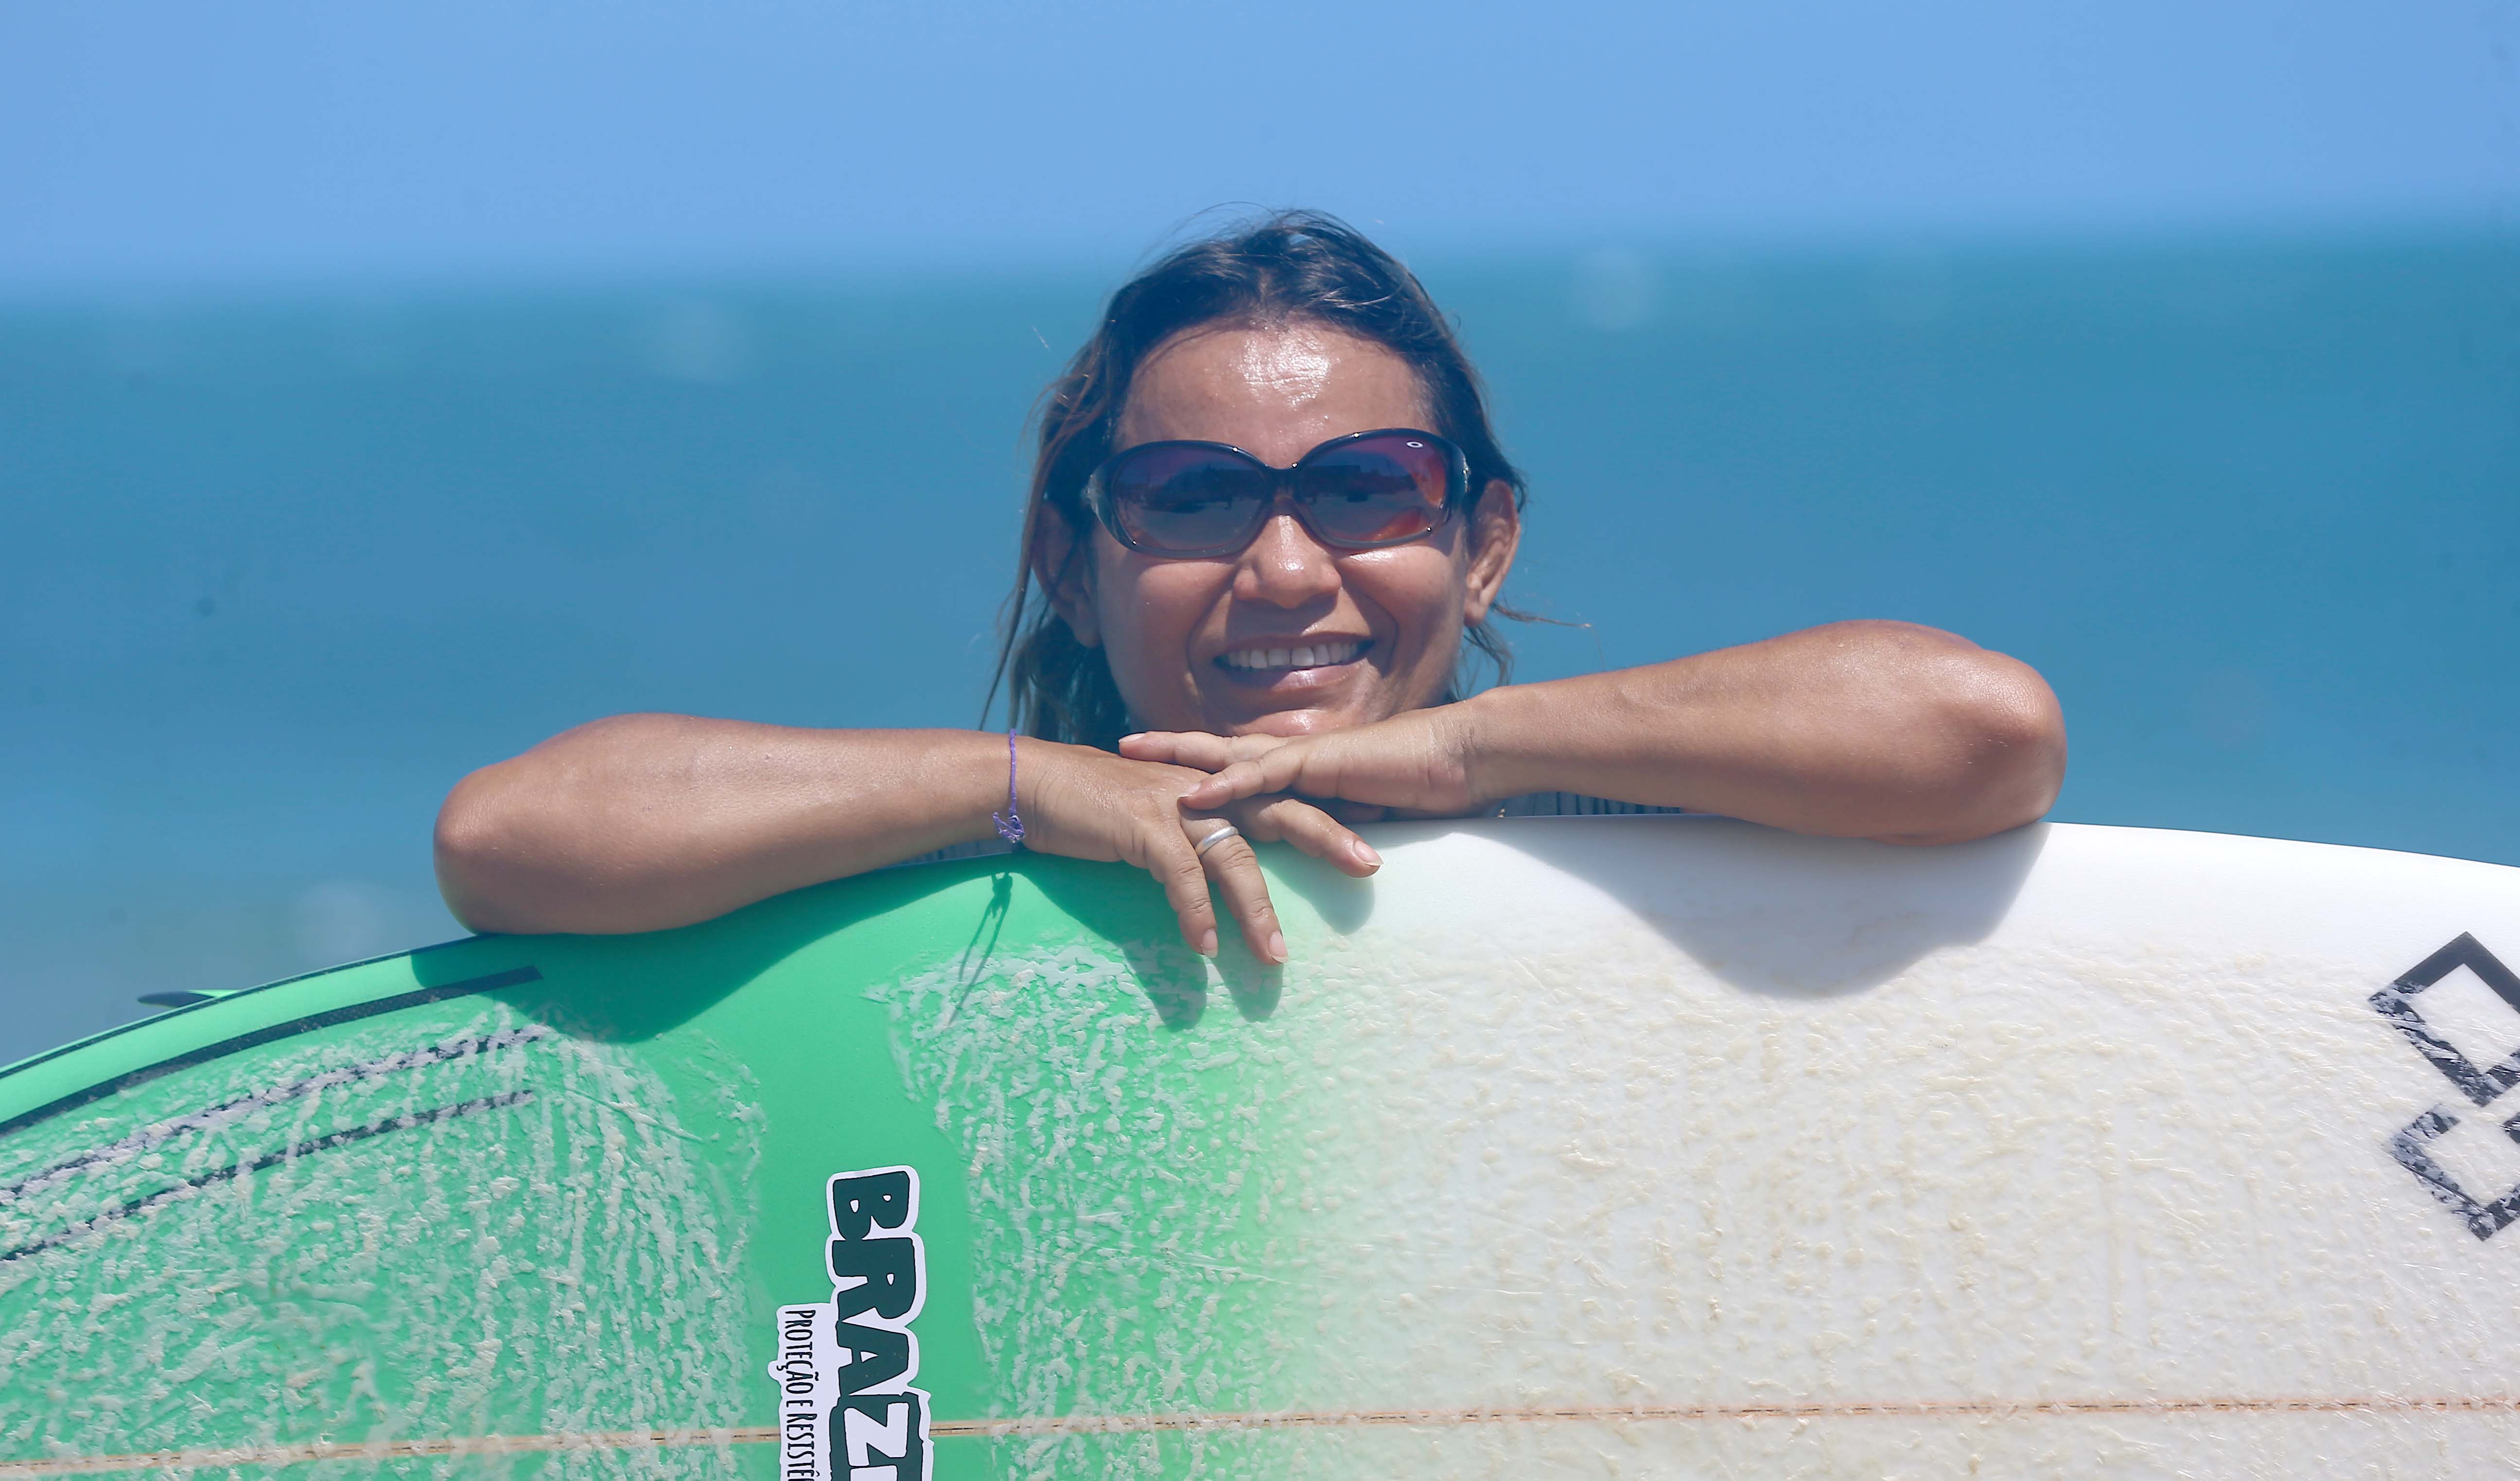 tita tavares posa para a foto segurando uma prancha de surfe